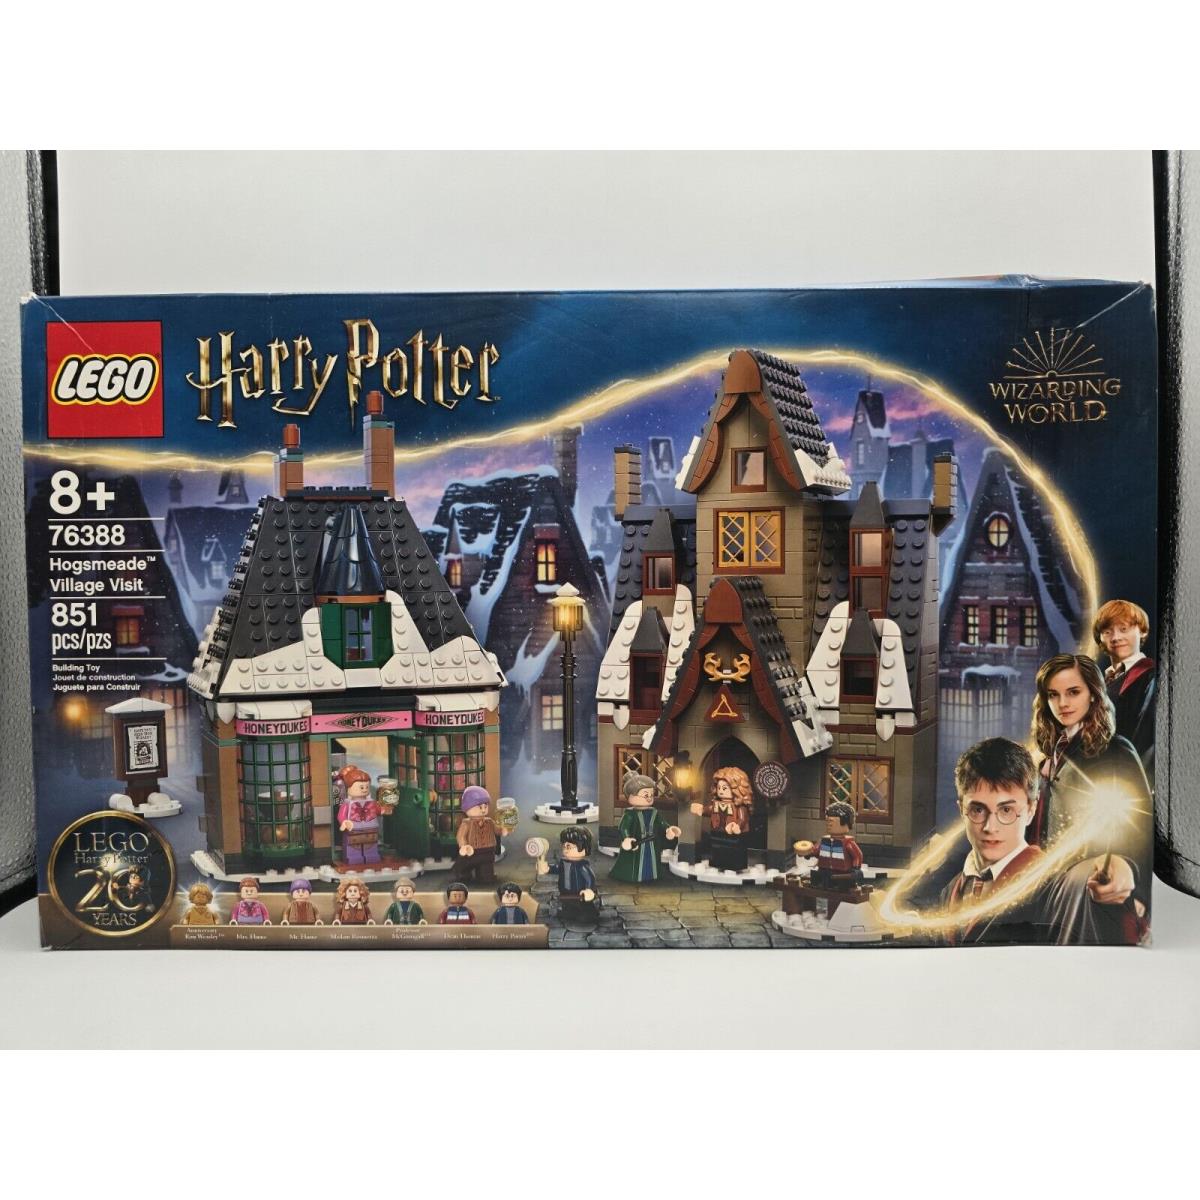 Lego Harry Potter Hogsmeade Village Visit 851 Pieces 76388